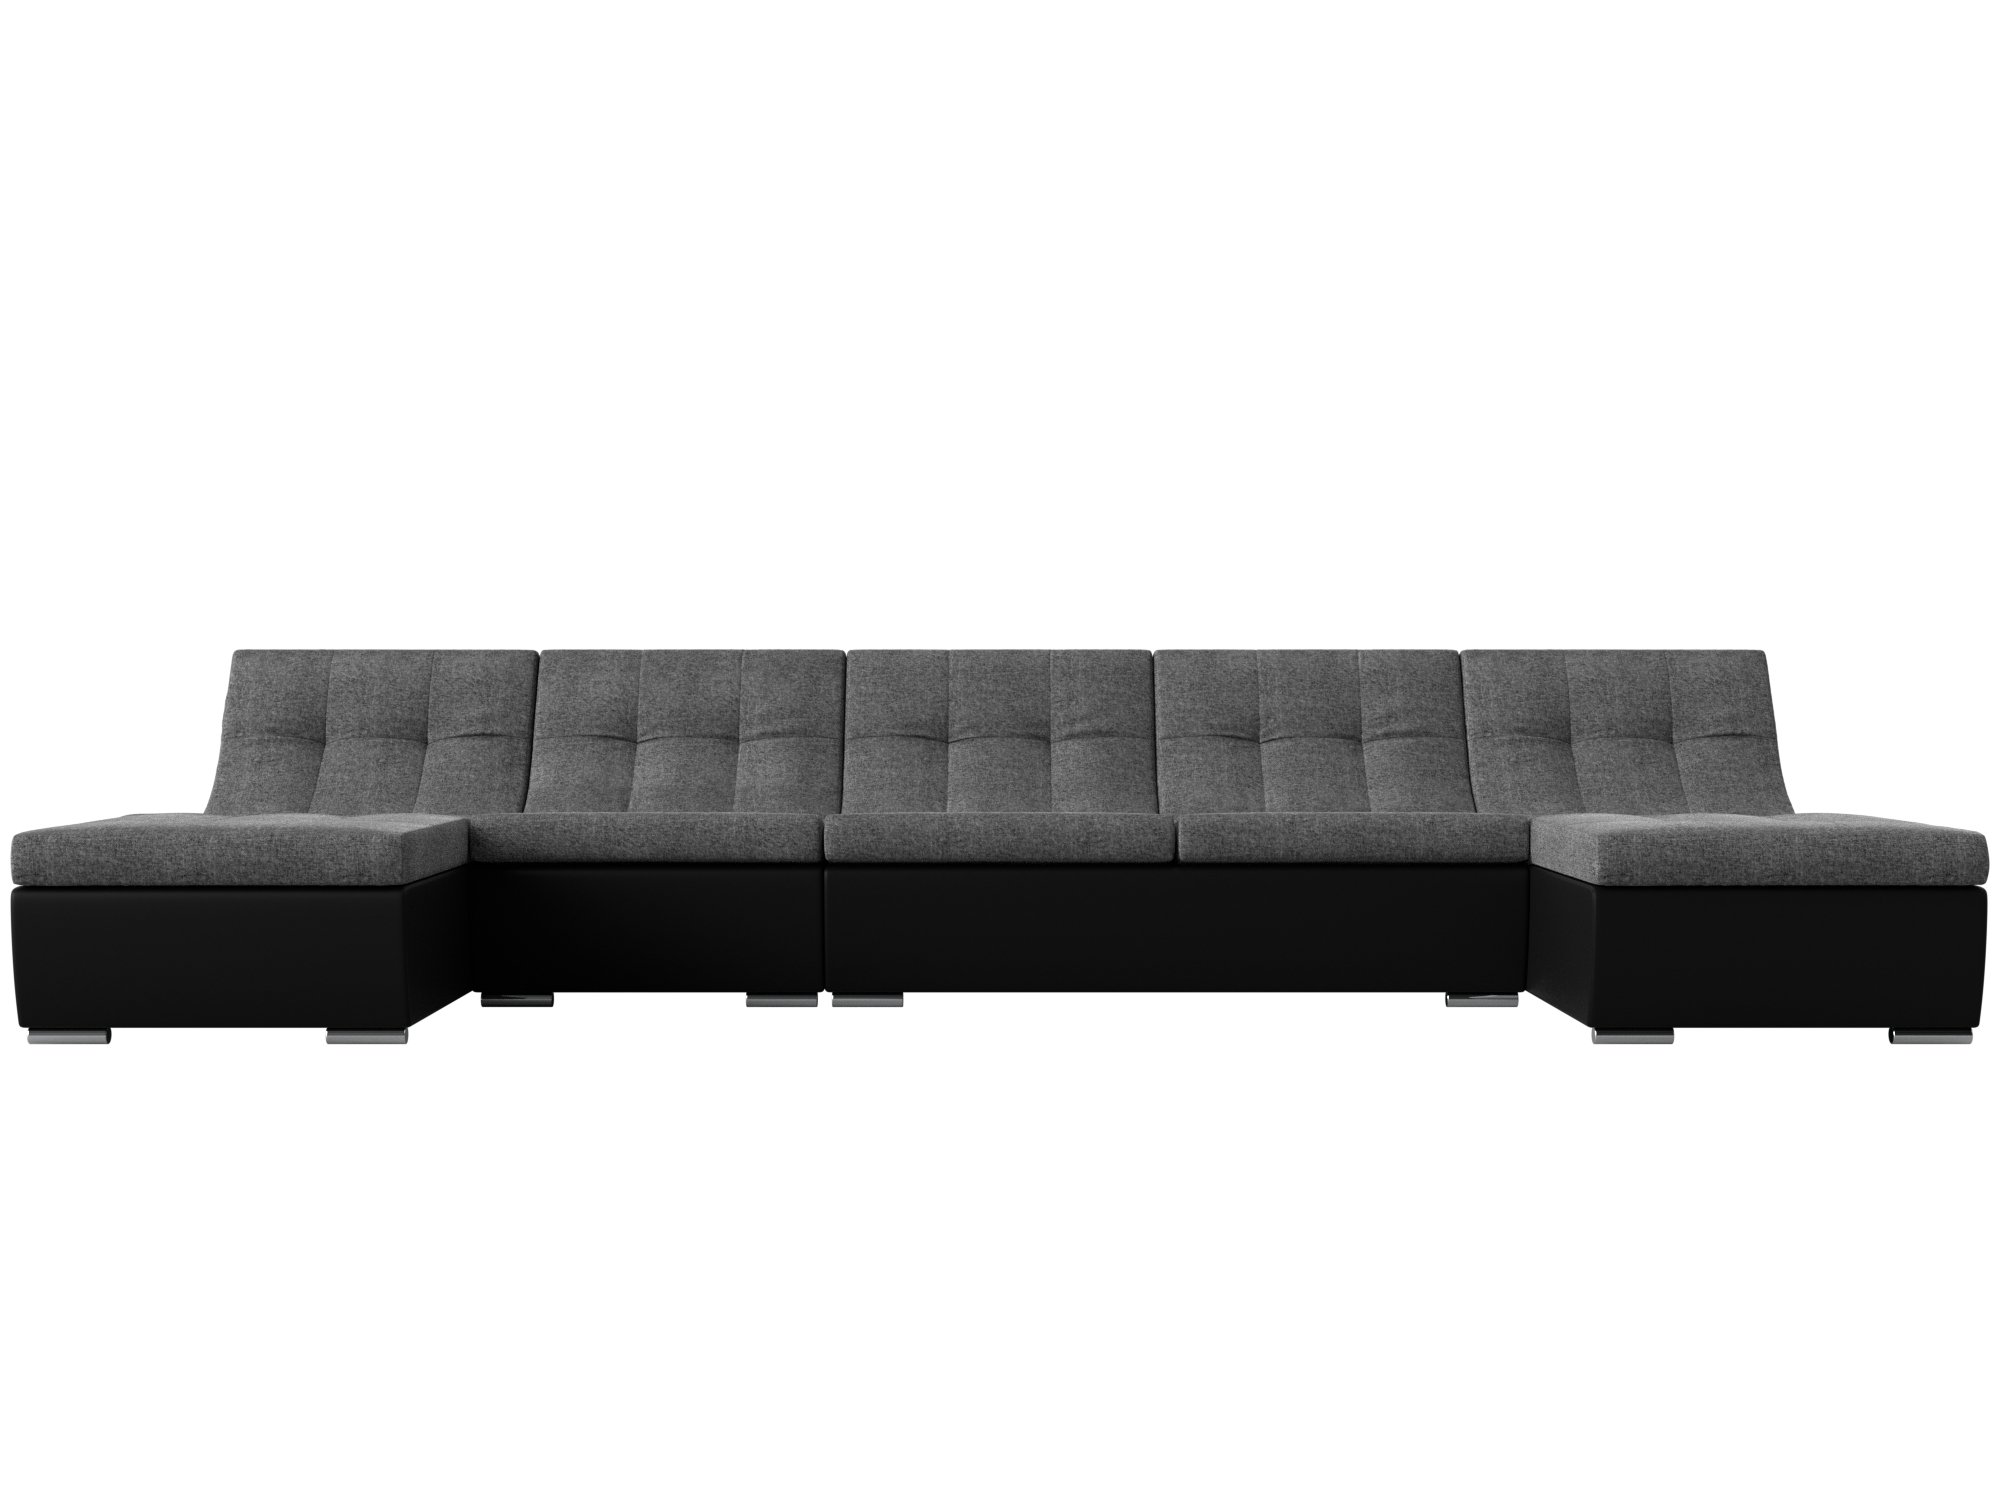 артмебель п образный диван клайд рогожка серый П-образный модульный диван Монреаль Long MebelVia Серый, Черный, Рогожка, Экокожа, ЛДСП